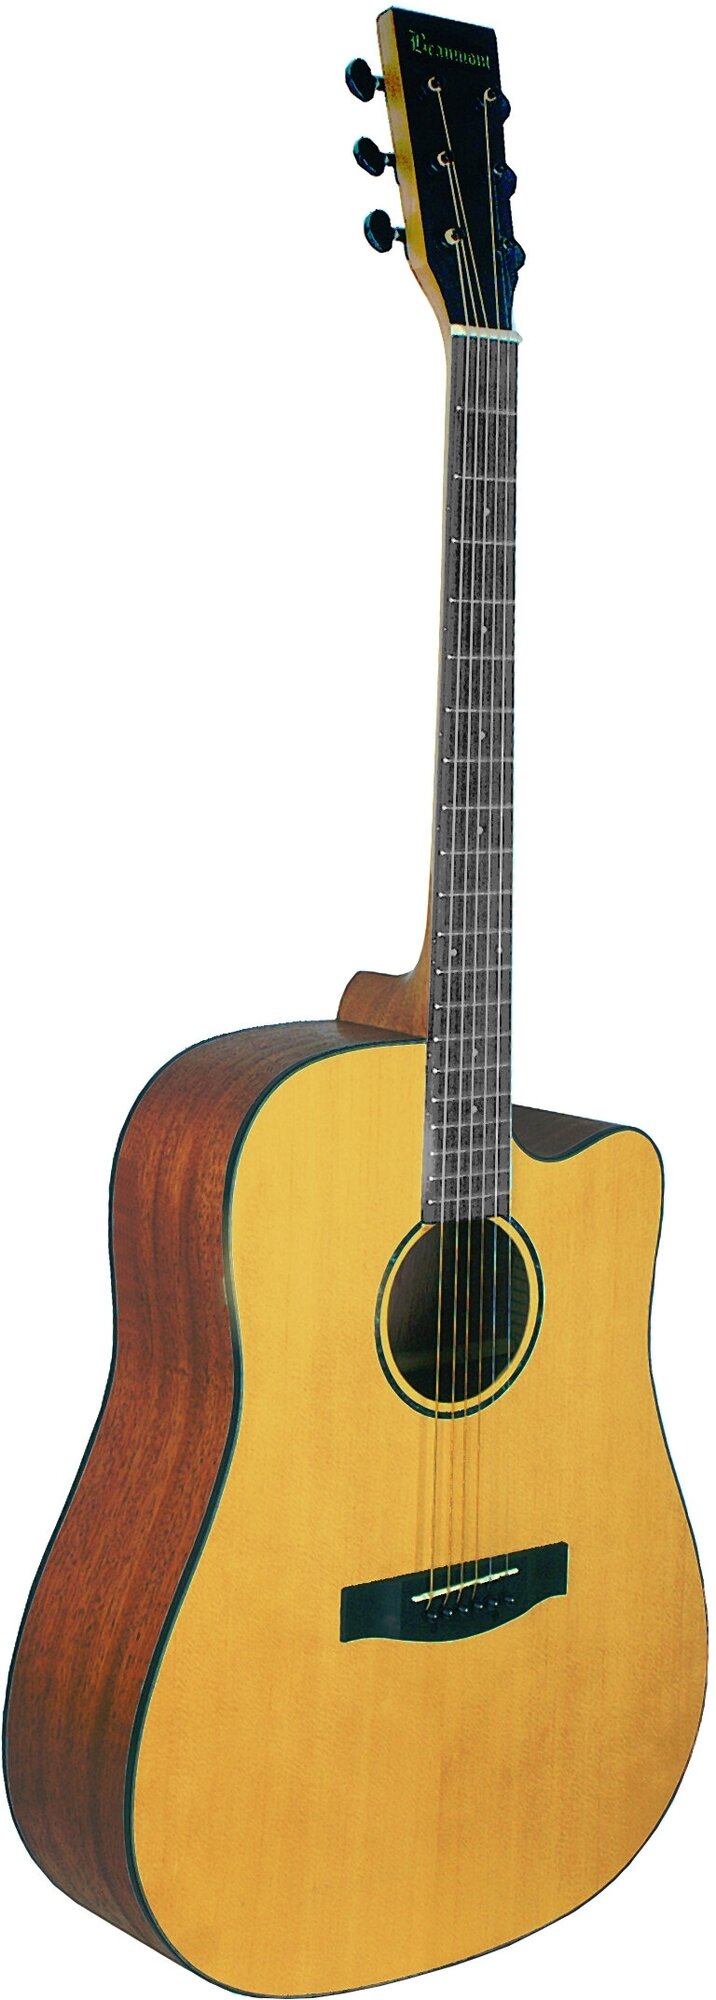 BEAUMONT DG142C - акустическая гитара, дредноут с вырезом, ель, цвет натуральный